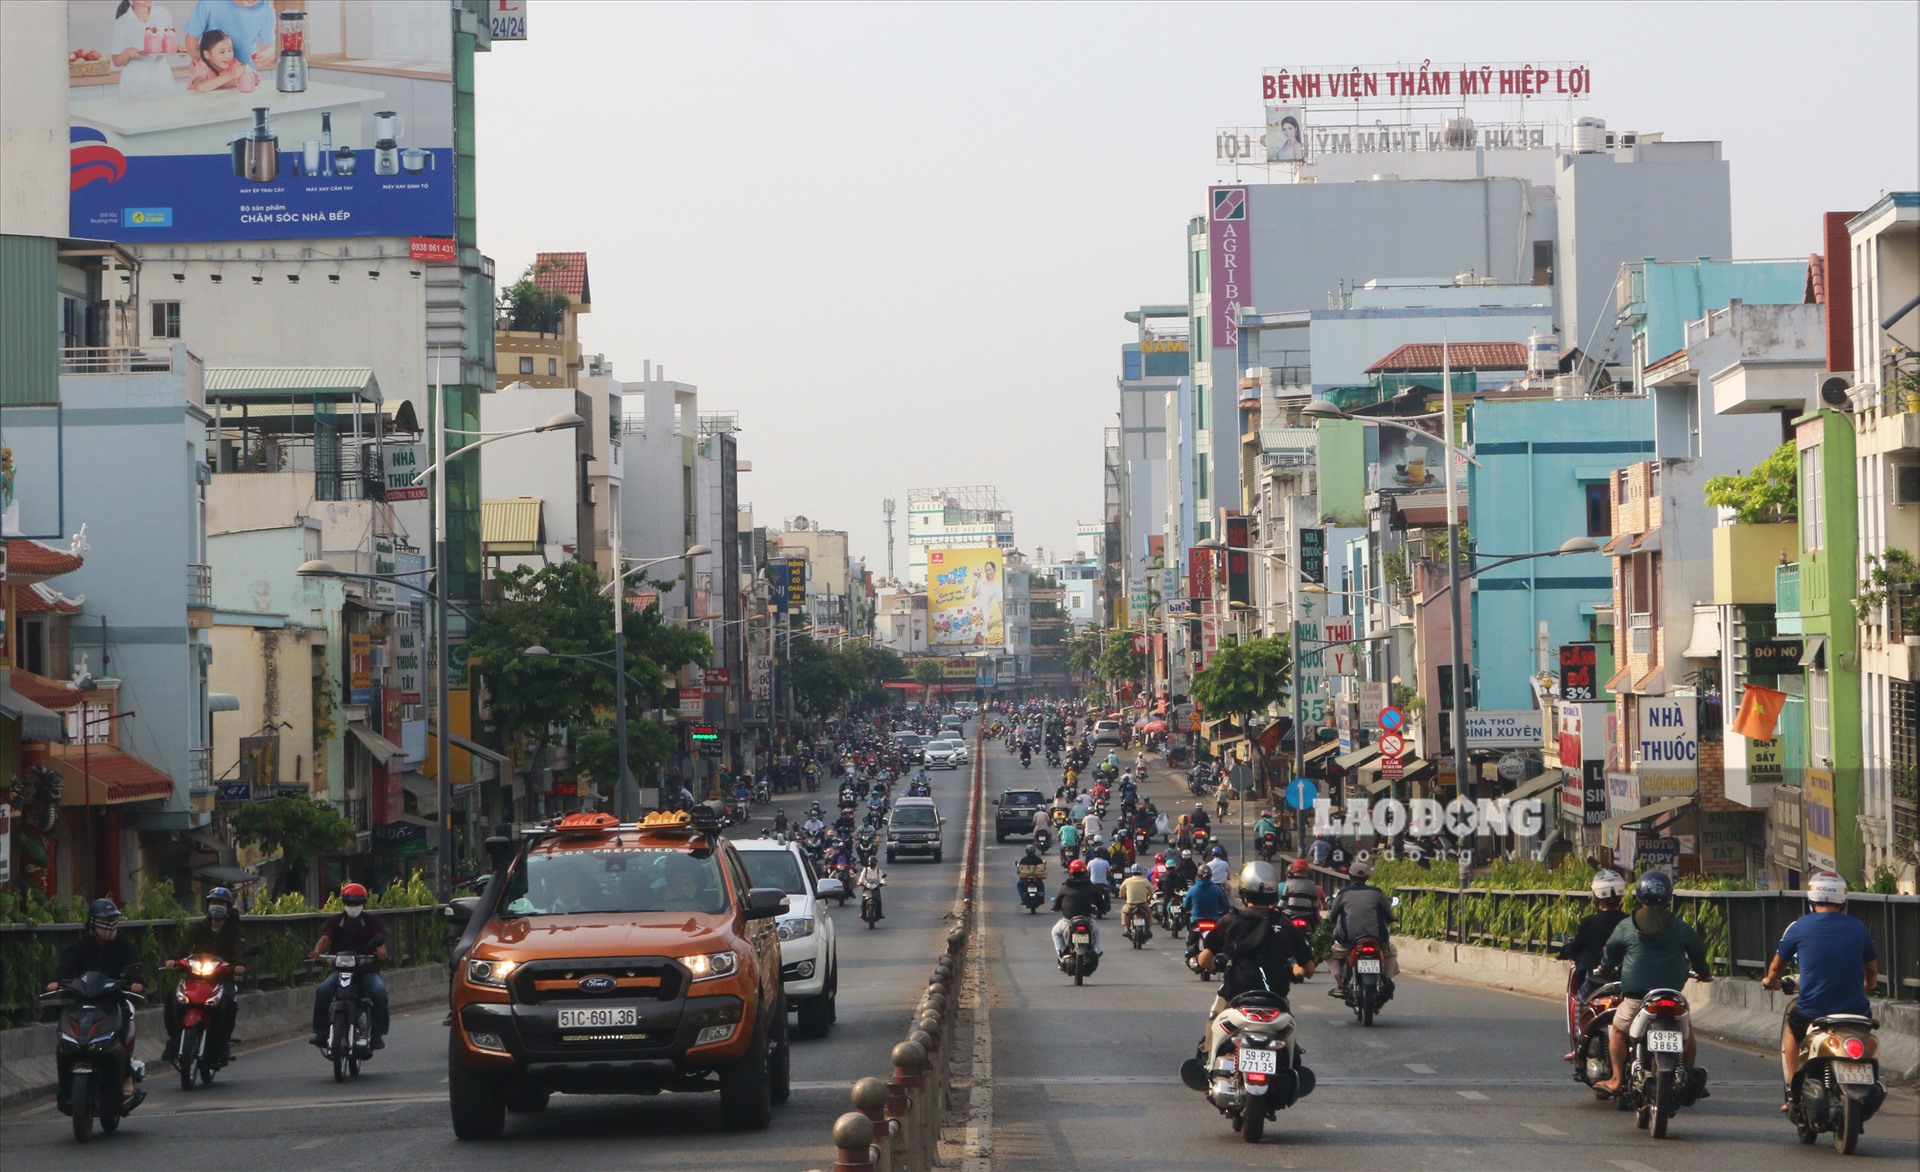 Nếu bạn cảm thấy chật chội với cách ly, hãy để chúng tôi giới thiệu tới bạn một Sài Gòn đầy lạ thường và khác biệt trong cái nhìn của người dân nhất là đường phố, nơi bạn có thể thư giãn, nghỉ ngơi và ngắm nhìn mọi sắc thái của thành phố.